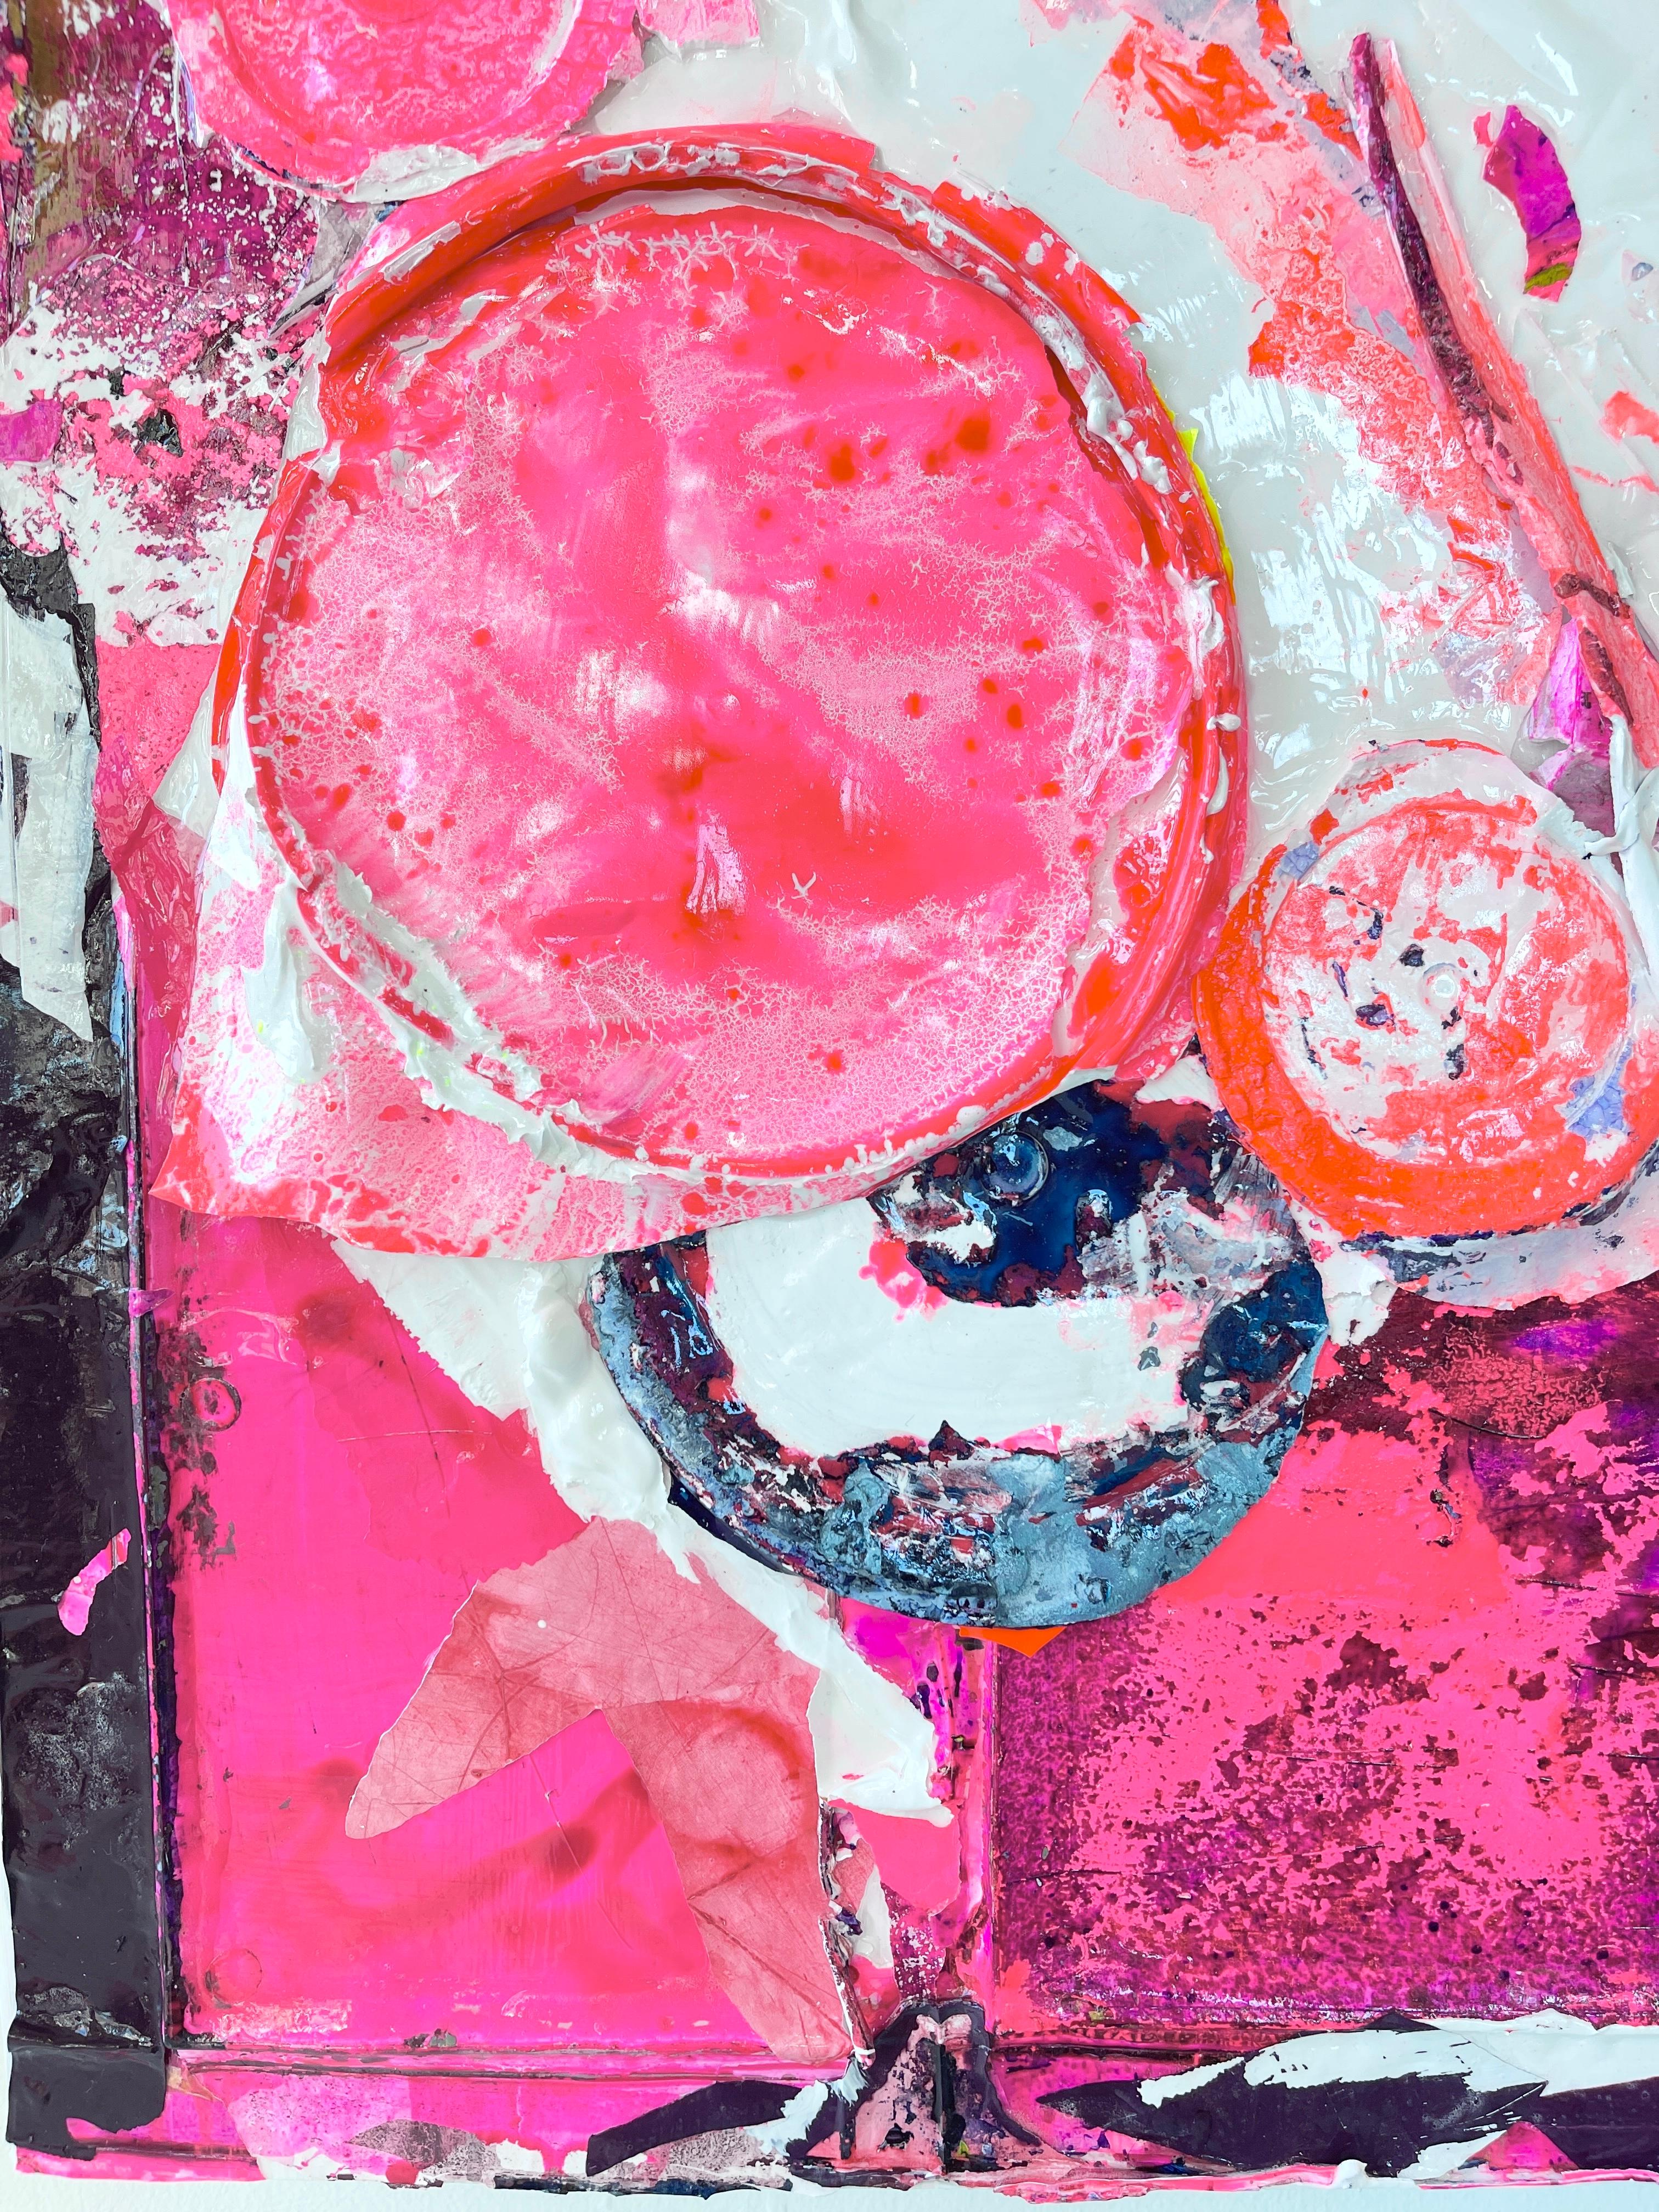 Cherry Chapstick ist ein abstraktes Gemälde mit collagierten Acrylfarben auf Holzplatte. Linda Colletta verwendete Rosa-, Rot-, Orange- und Cremetöne, um dieses frische und lebendige Kunstwerk zu schaffen. 

Kirschen-Kontaktstift
24